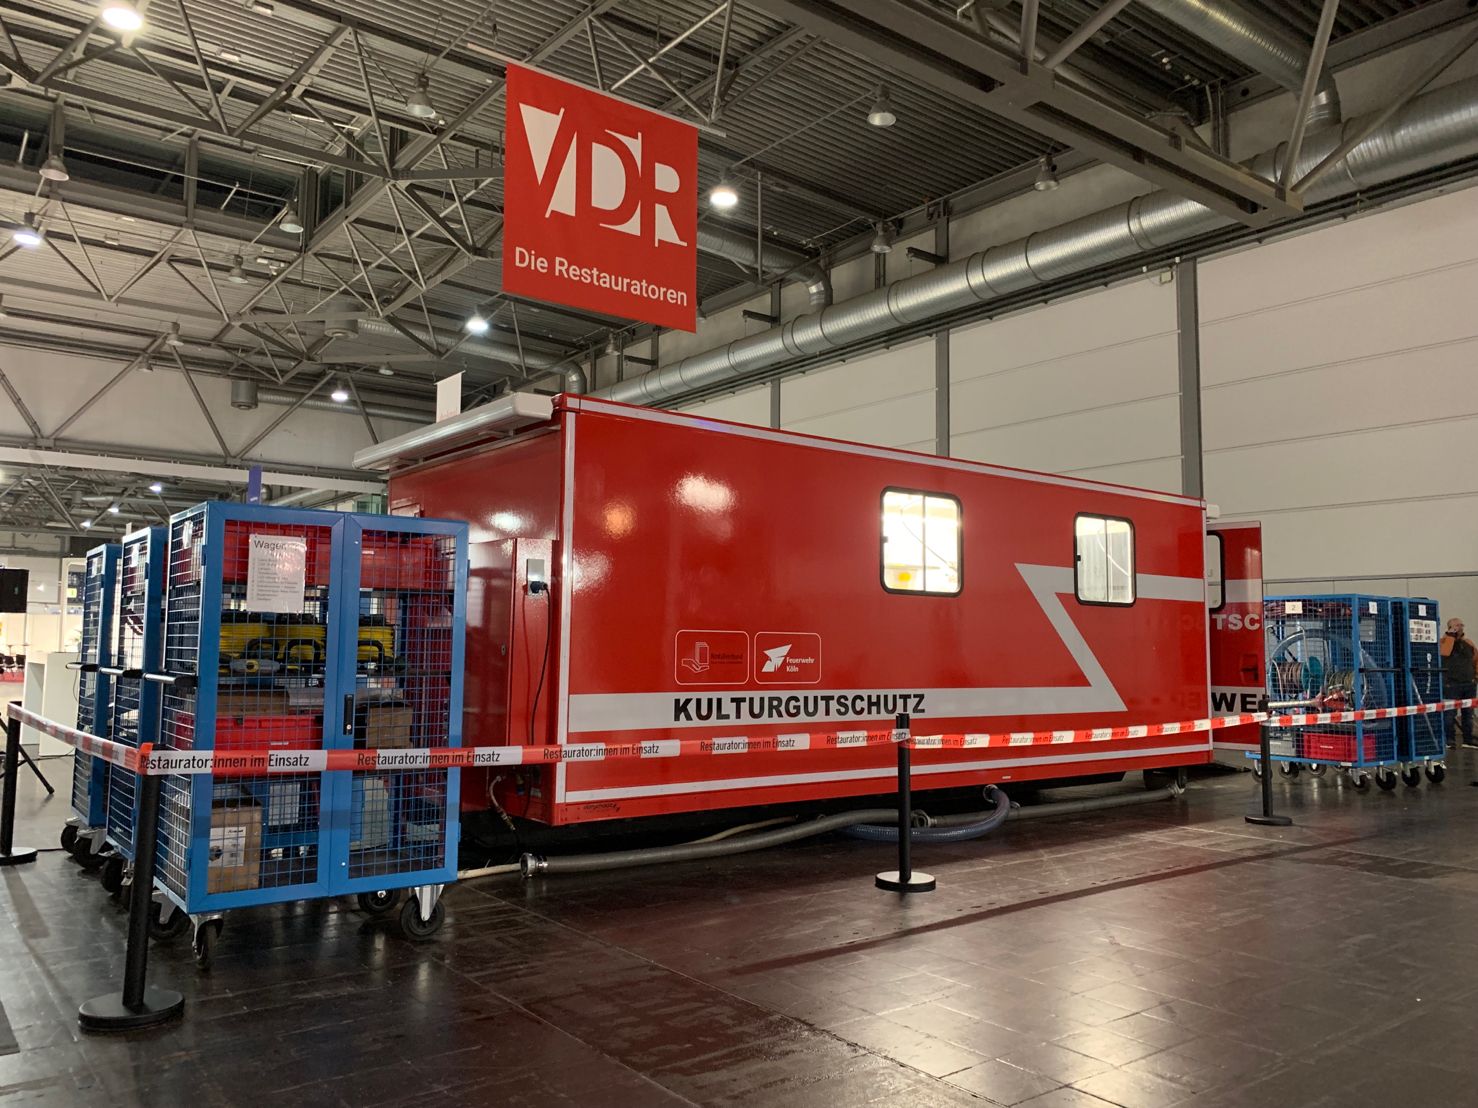 Am VDR-Srand präsentieren wir in diesem Jahr den "Notfallcontainer Kulturgutschutz" aus Köln. Foto: Nadine Thiel.